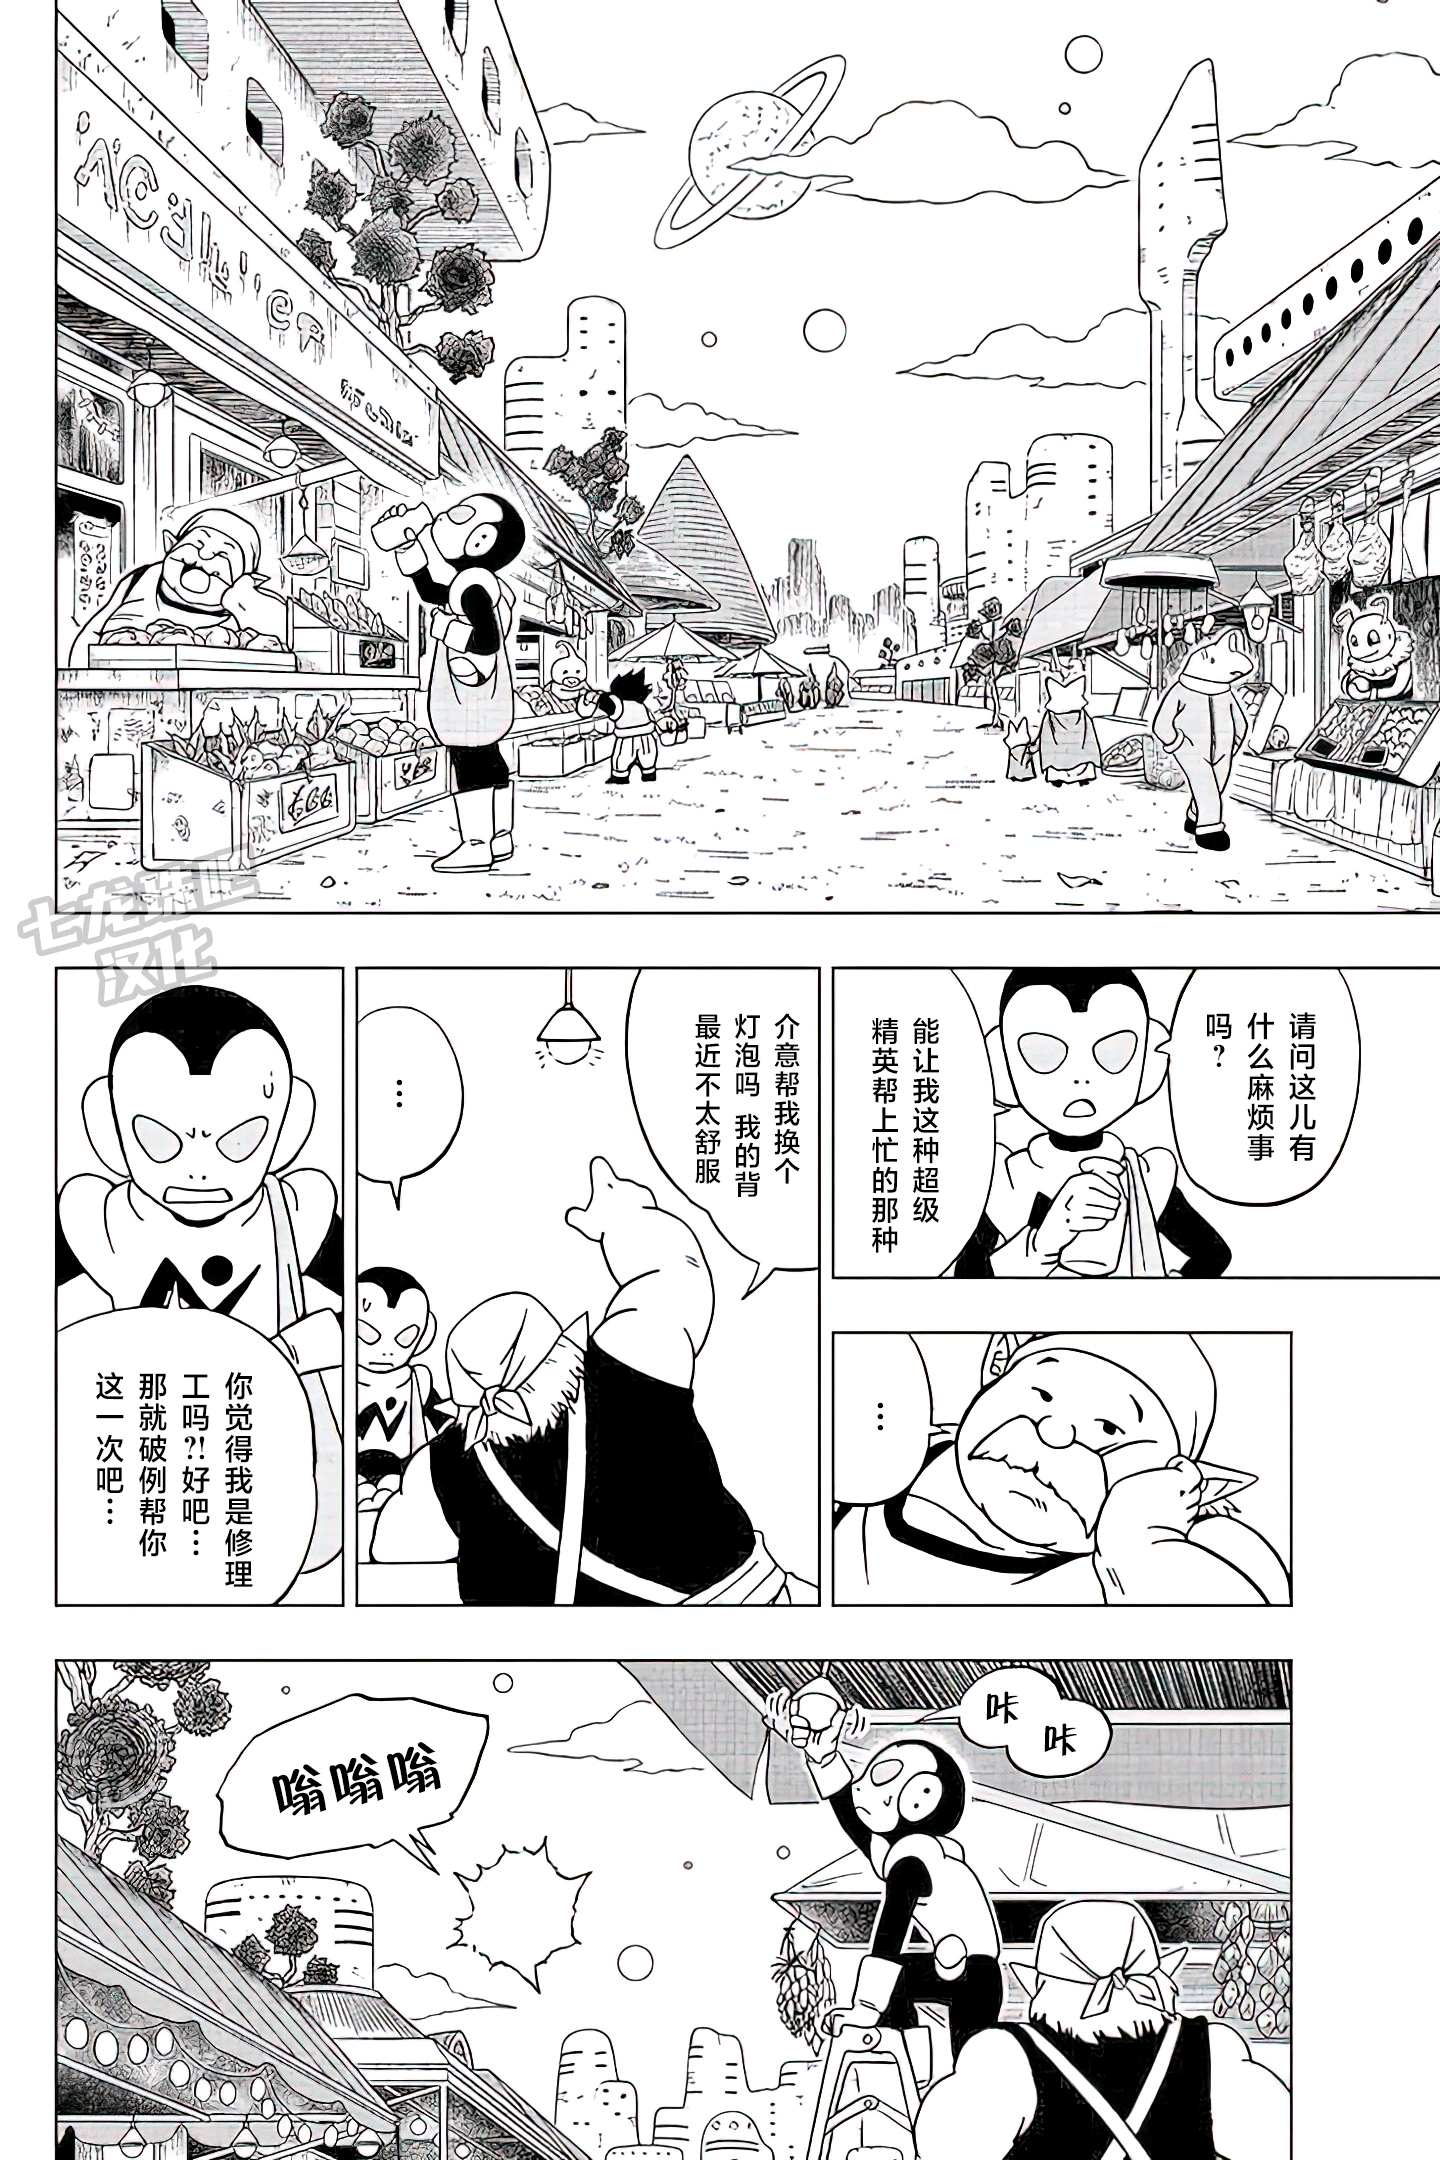 龙珠超漫画第81话
悟空的纠葛